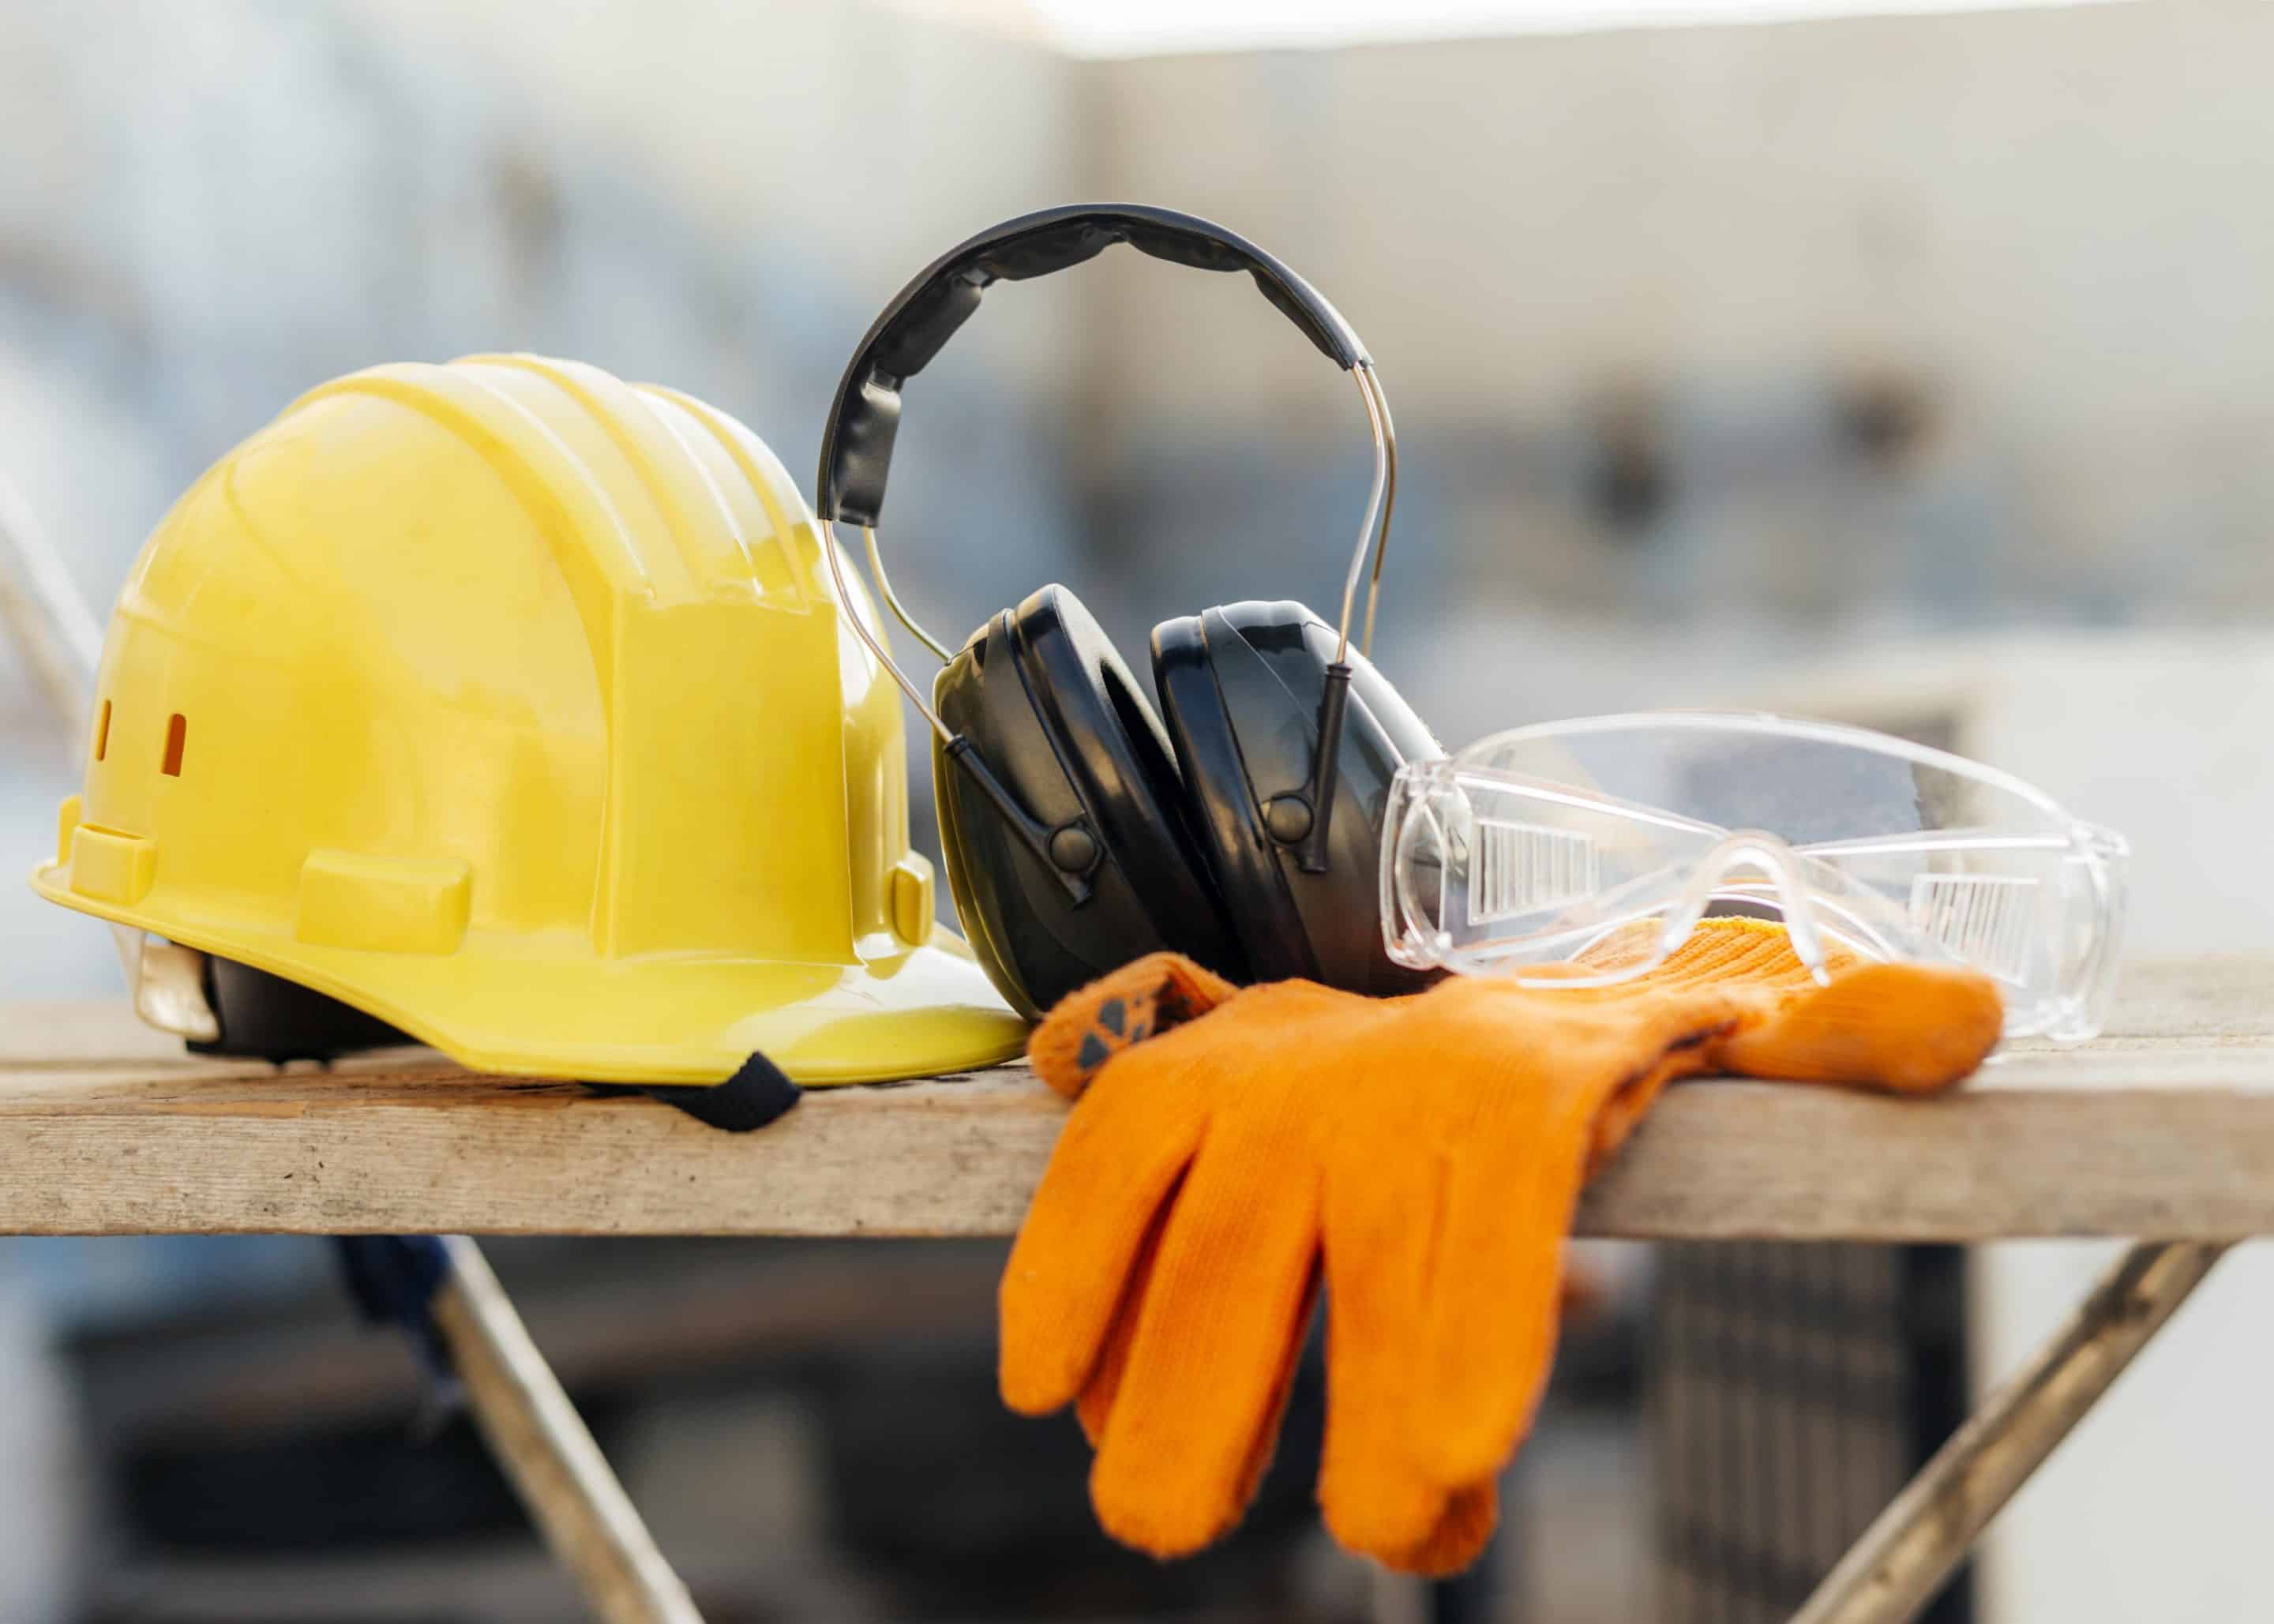 Encima de una mesa se ven un casco de seguridad, gafas de seguridad, guantes de protección y audífonos de protección. Todo elementos que ilustran la seguridad e higiene industrial en la prevención de riesgos laborales.